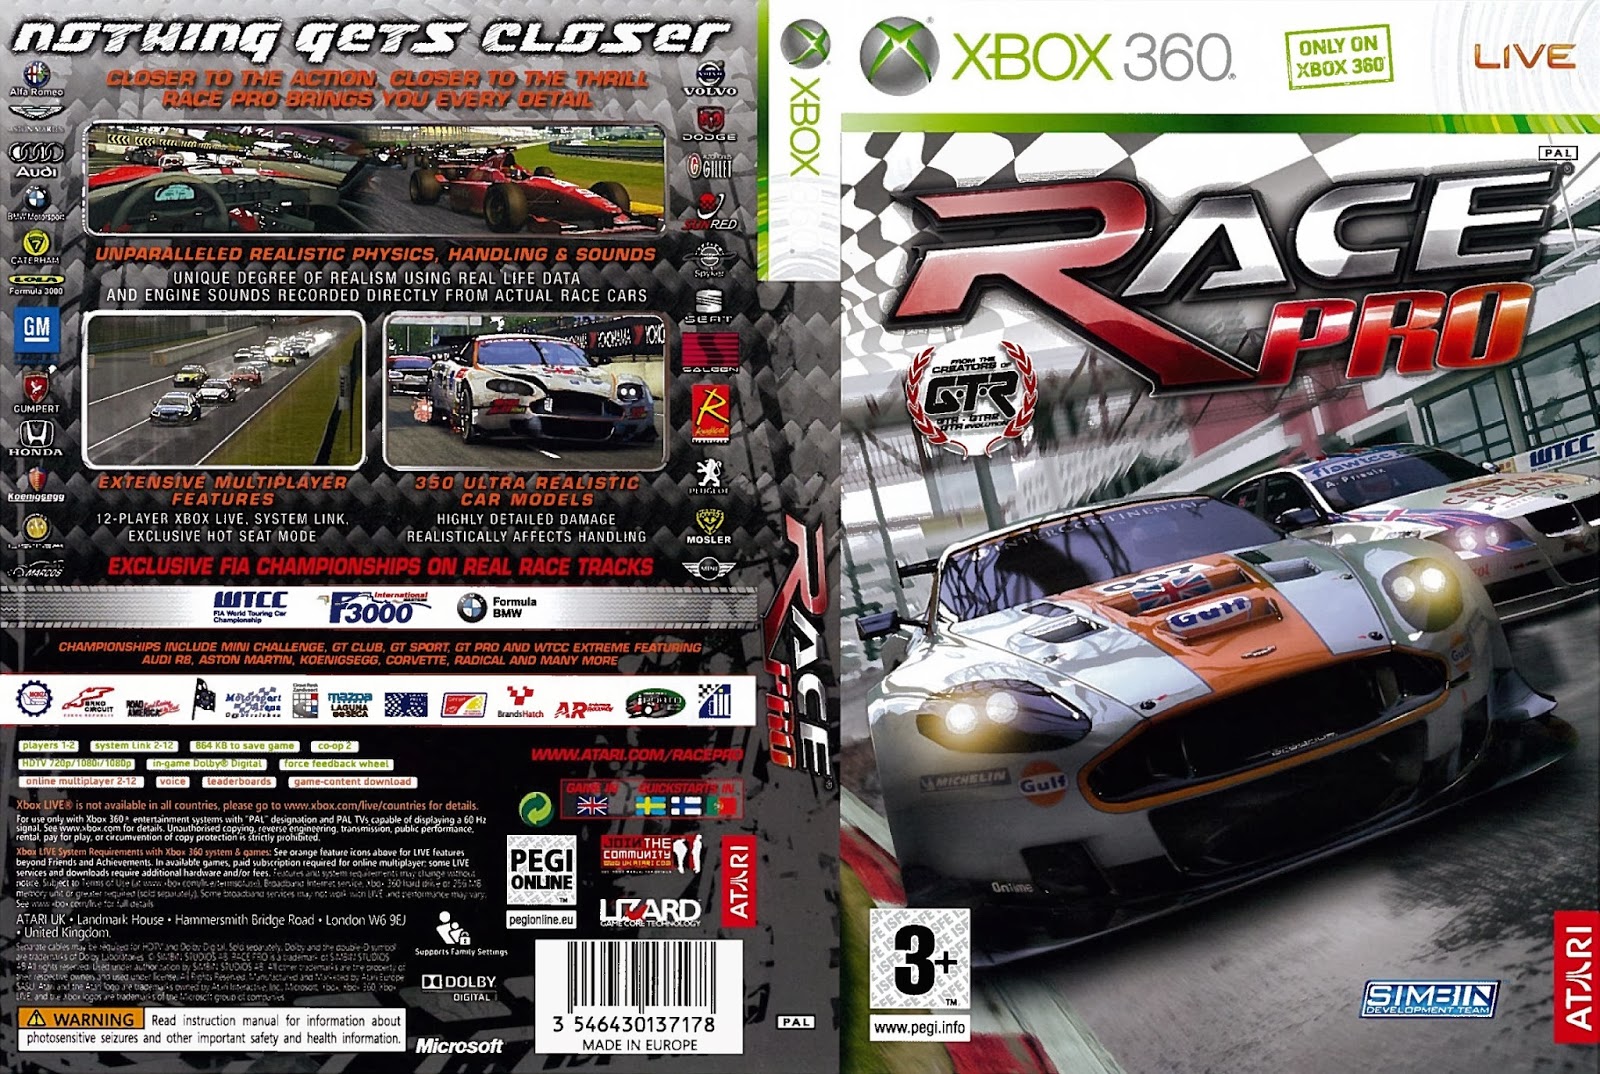 Xbox 360 racing games. Race Pro Xbox 360. Гонки на Xbox 360 2001. Детские гонки на Xbox 360.